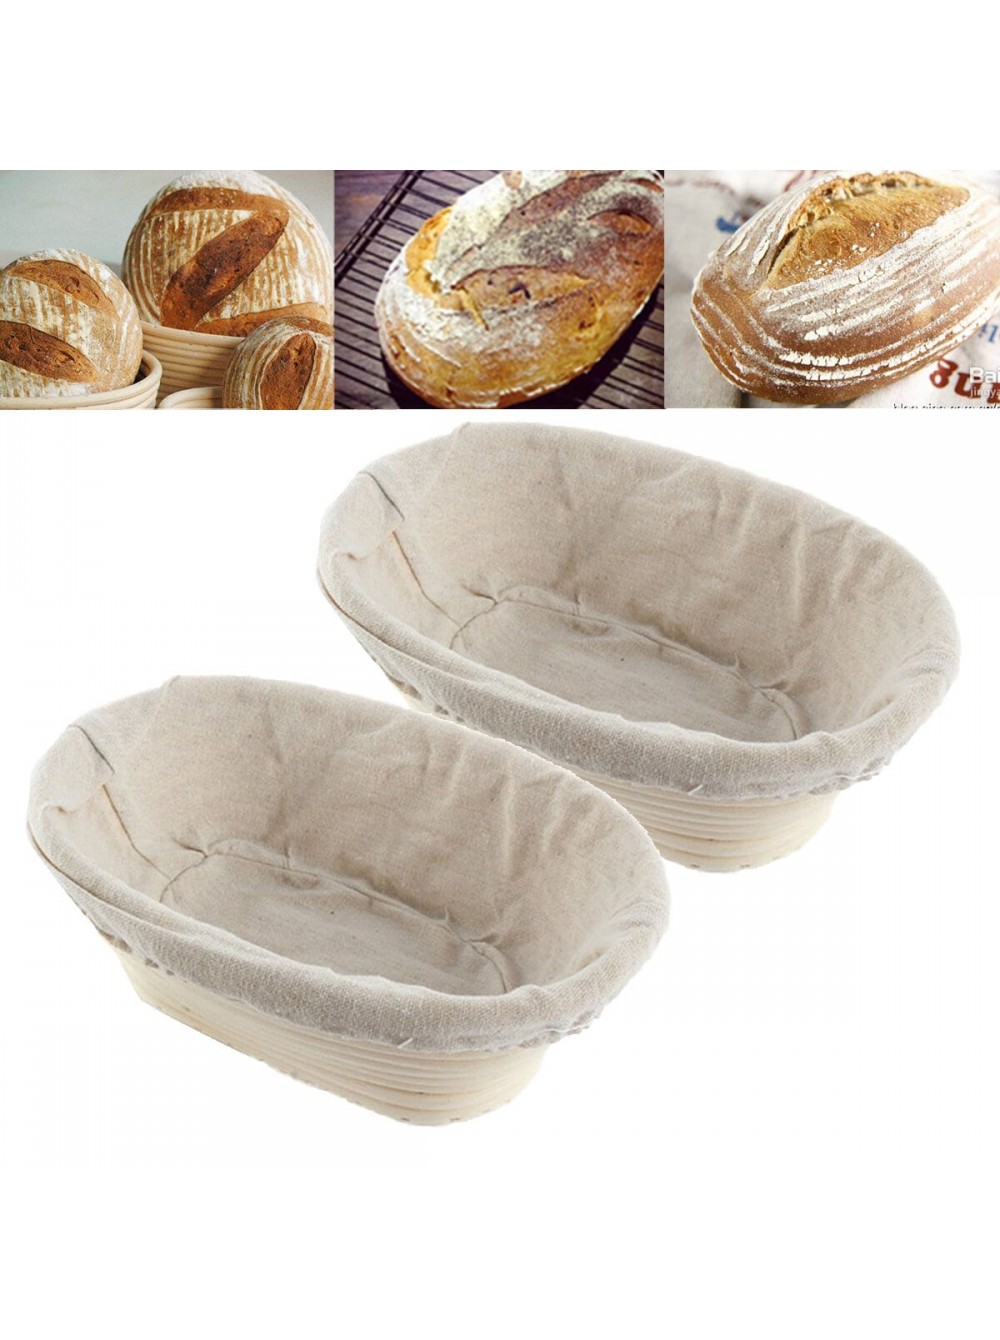 Корзинка ротанговая для расстойки хлеба круглая 0.75кг (Словения)